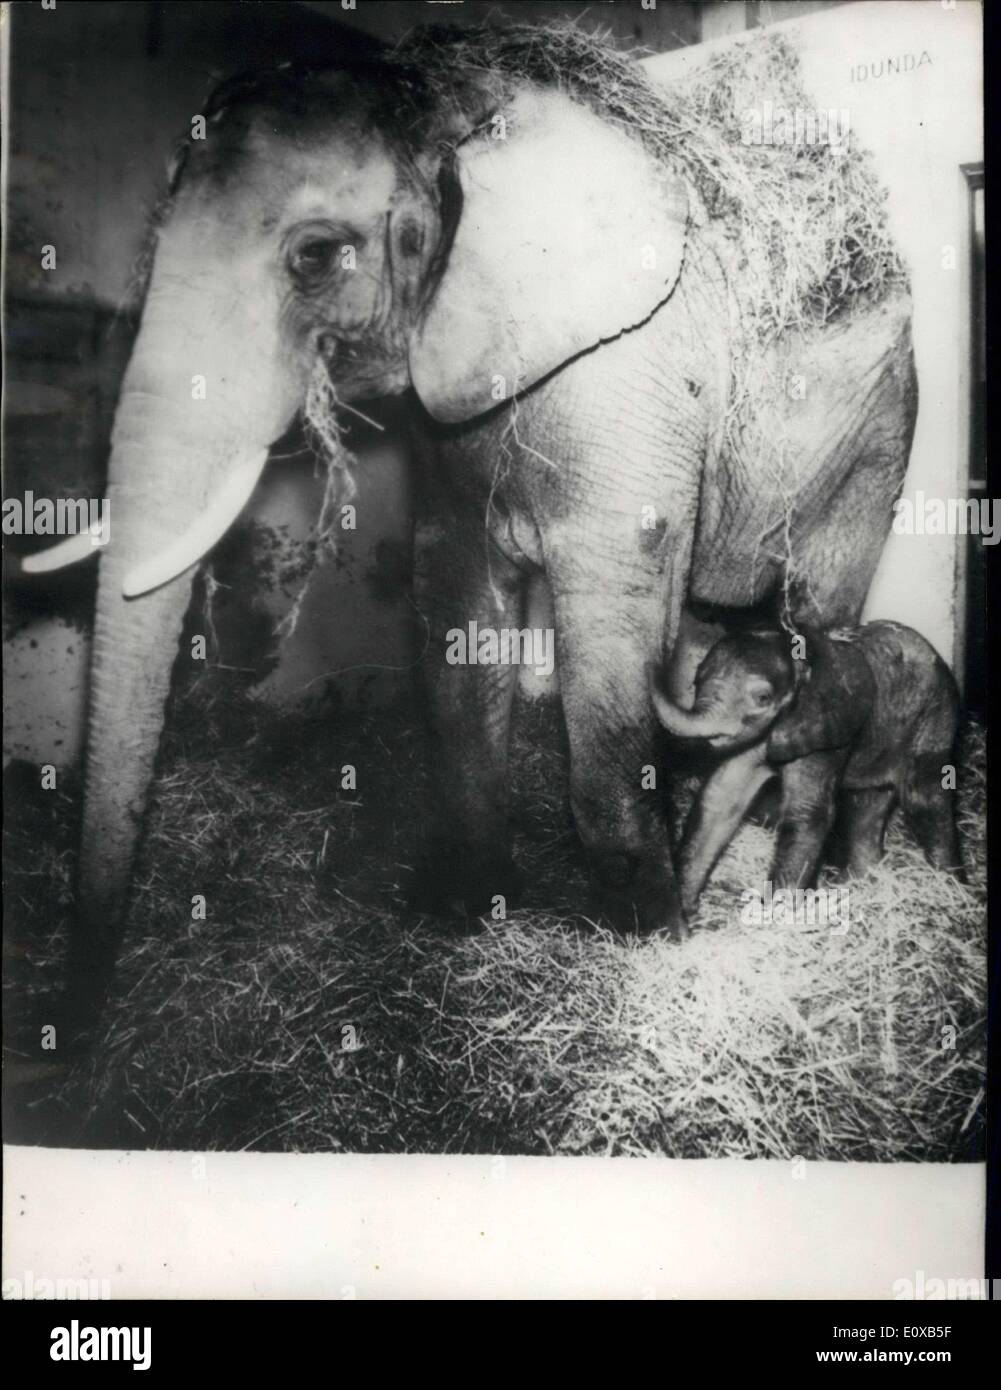 13 janvier 1966 - elle Mère éléphant pour la troisième fois en captivité : L Bsl zoo éléphant elle a donné naissance à bébé éléphant pour la troisième fois sh elle a été dans captivitiy. Elle montre l'éléphant du zoo de Bâle avec son bébé éléphant. Banque D'Images